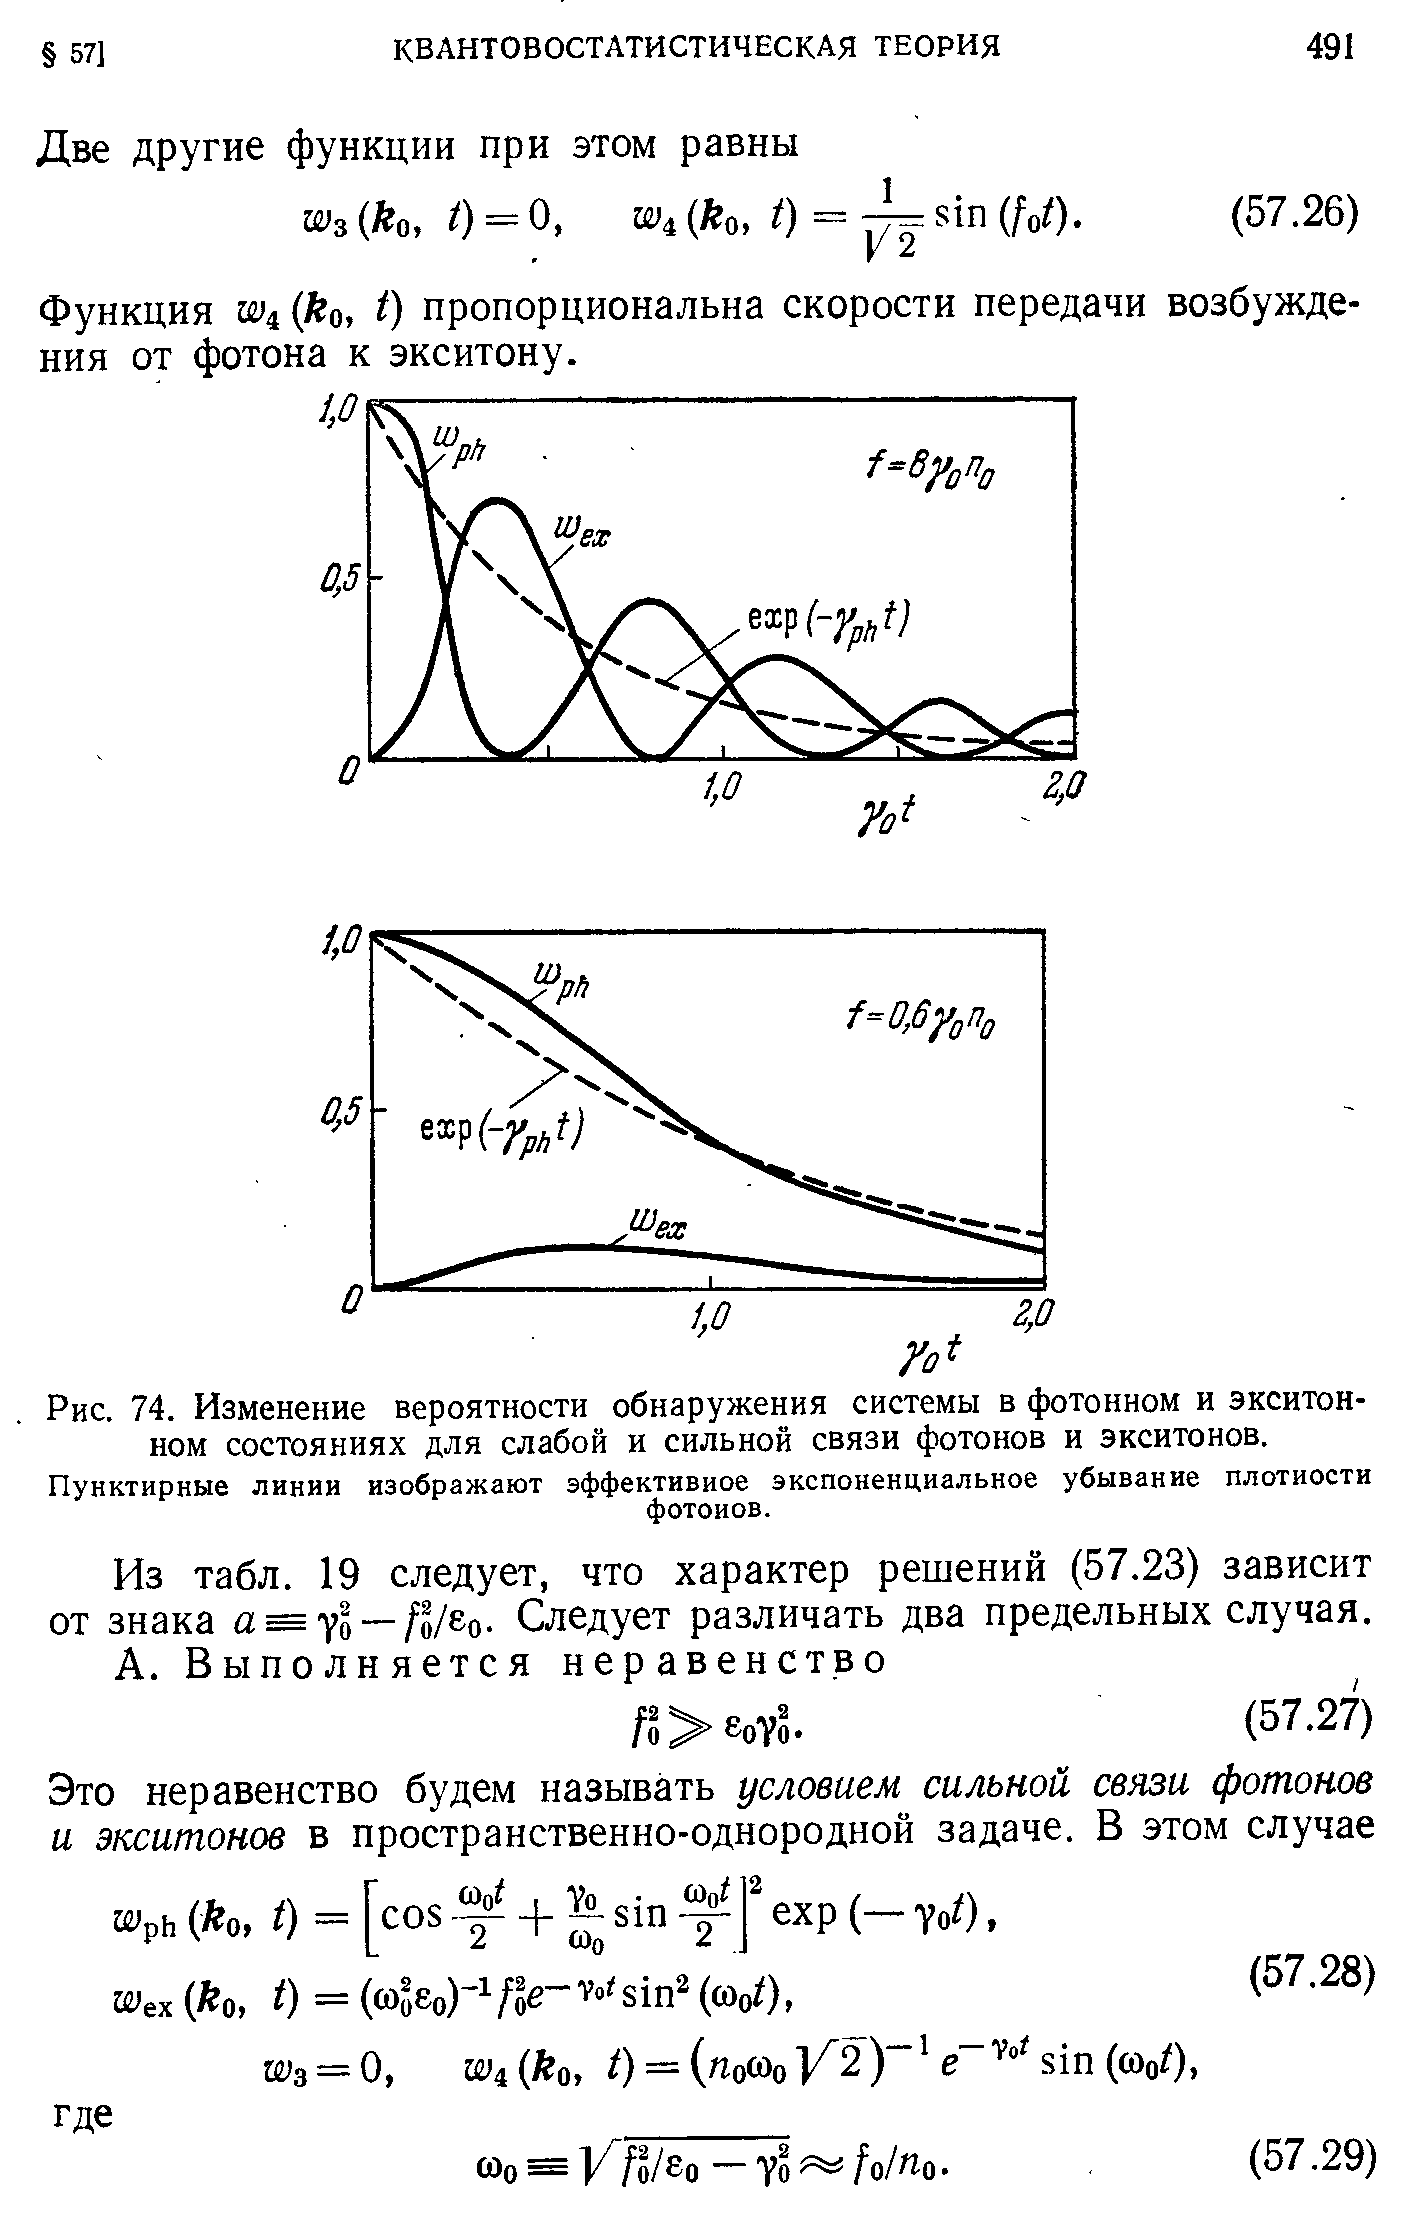 Функция Ш4 (Ло, о пропорциональна скорости передачи возбуждения от фотона к экситону.
